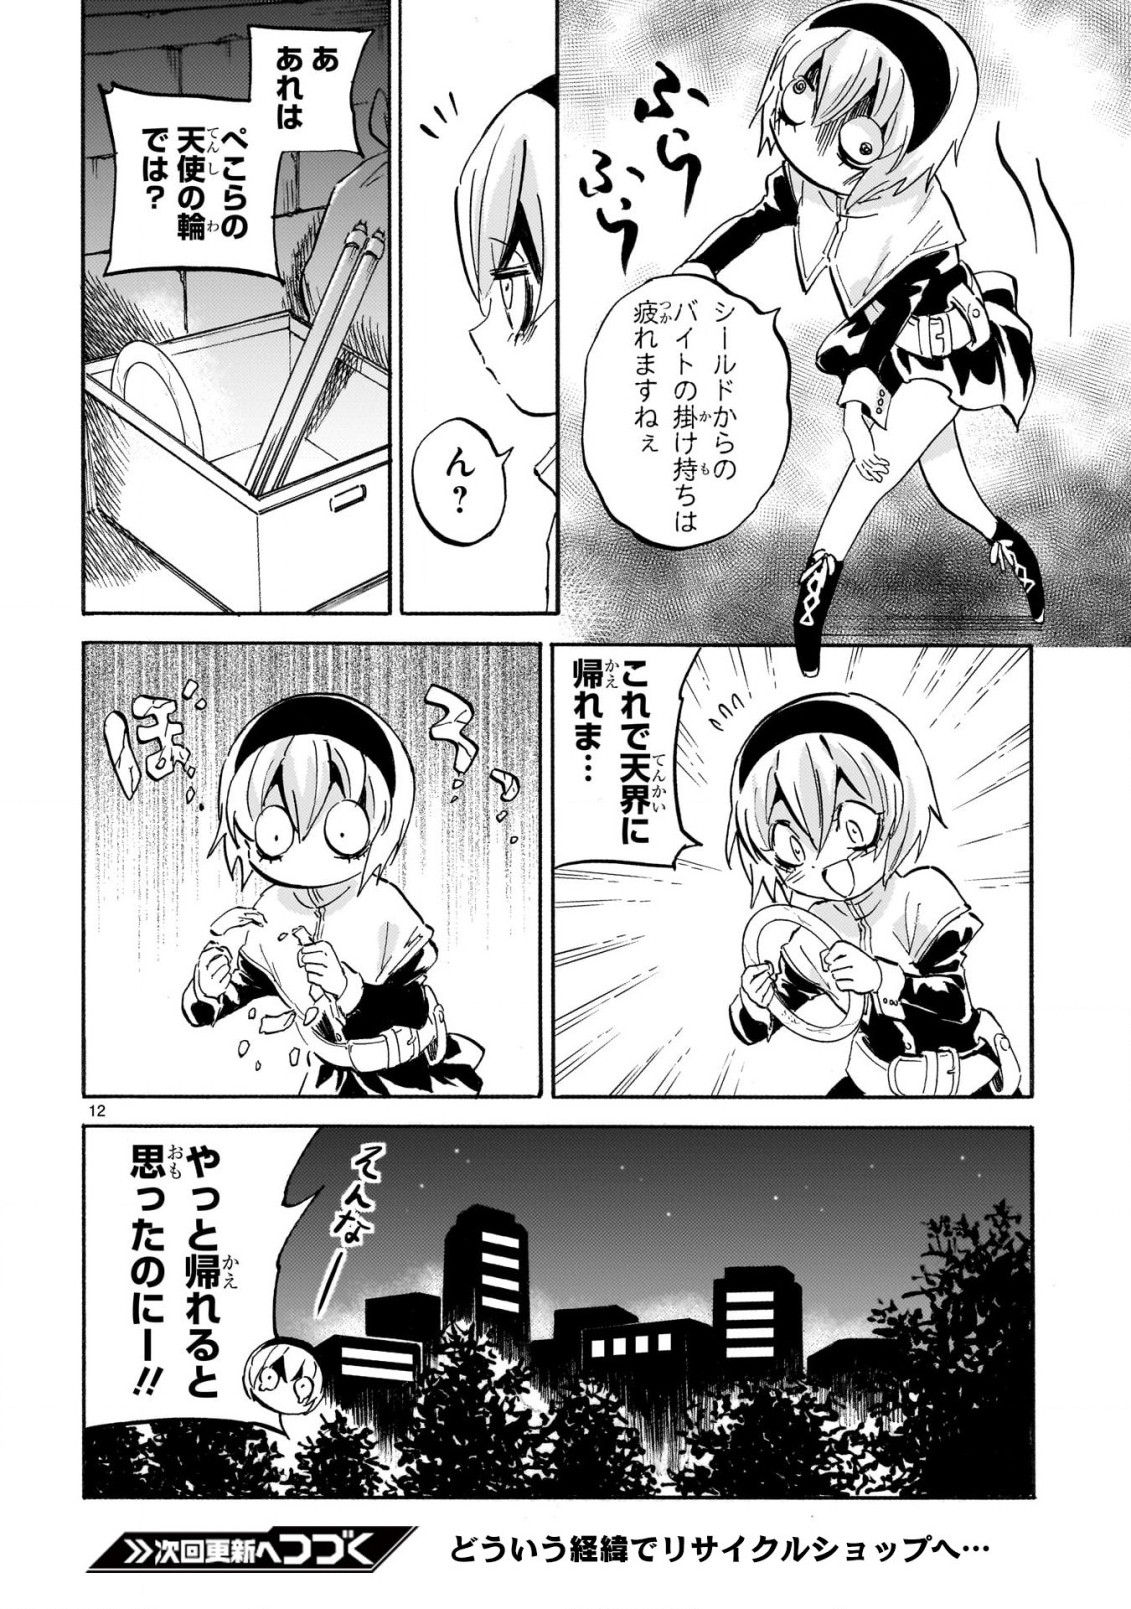 Jashin-chan Dropkick - Chapter 228 - Page 12